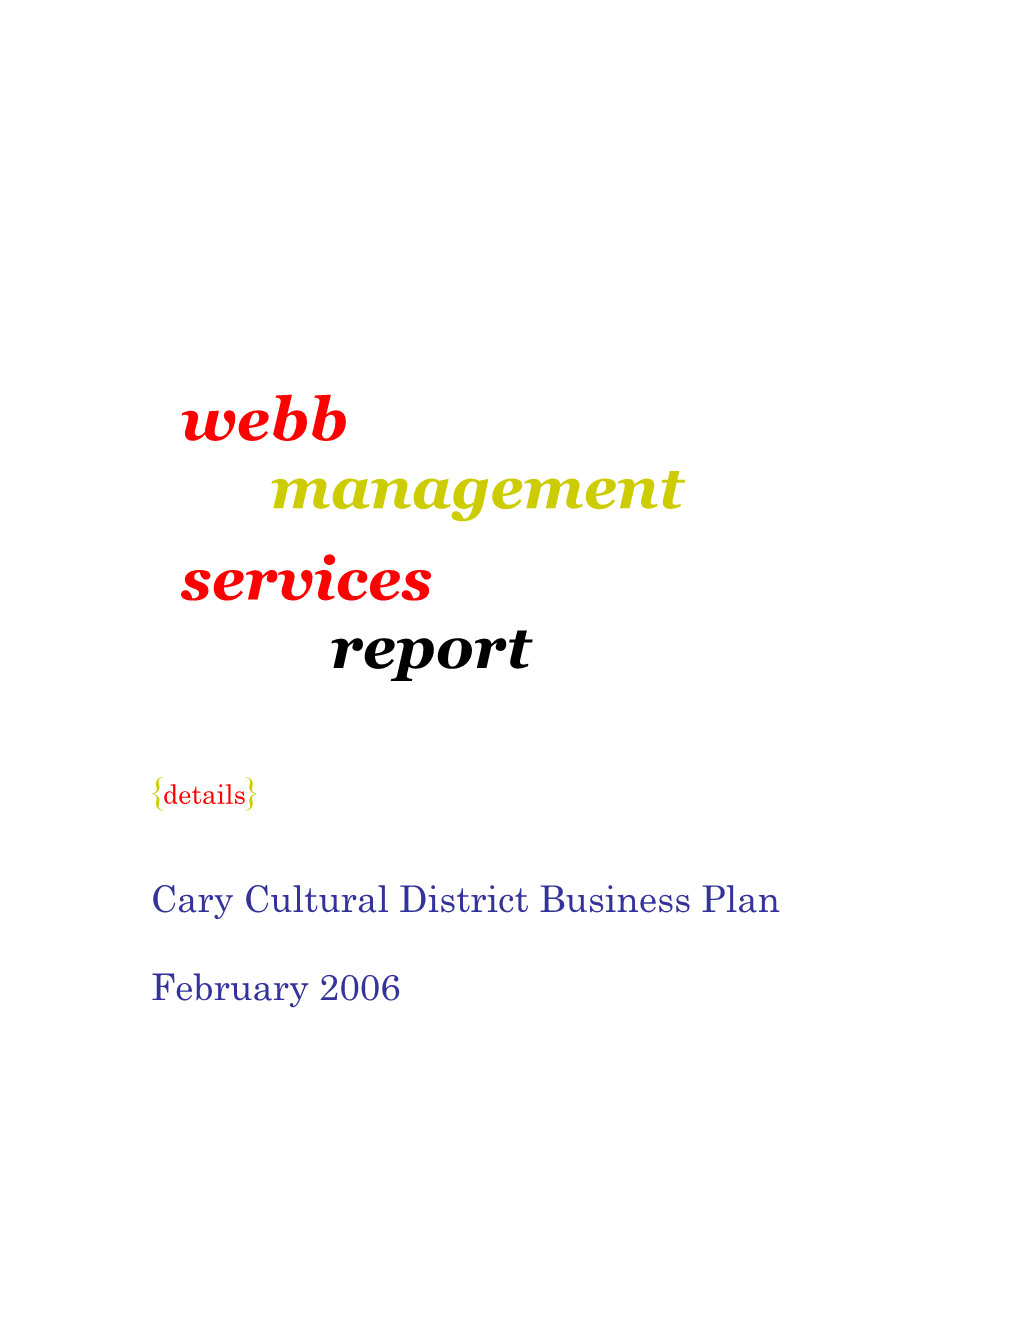 Webb Management Services Report